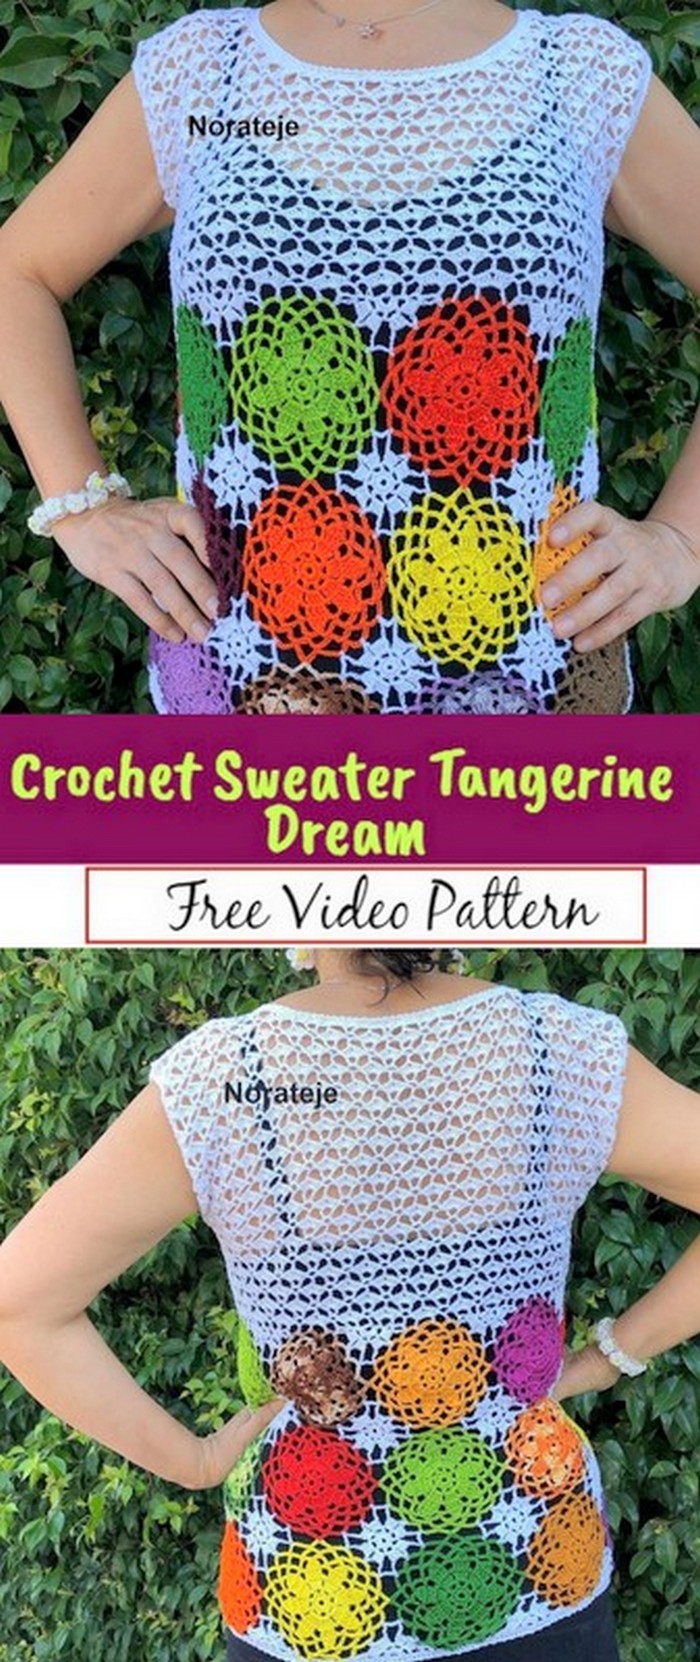 Crochet Sweater Tangerine Dream